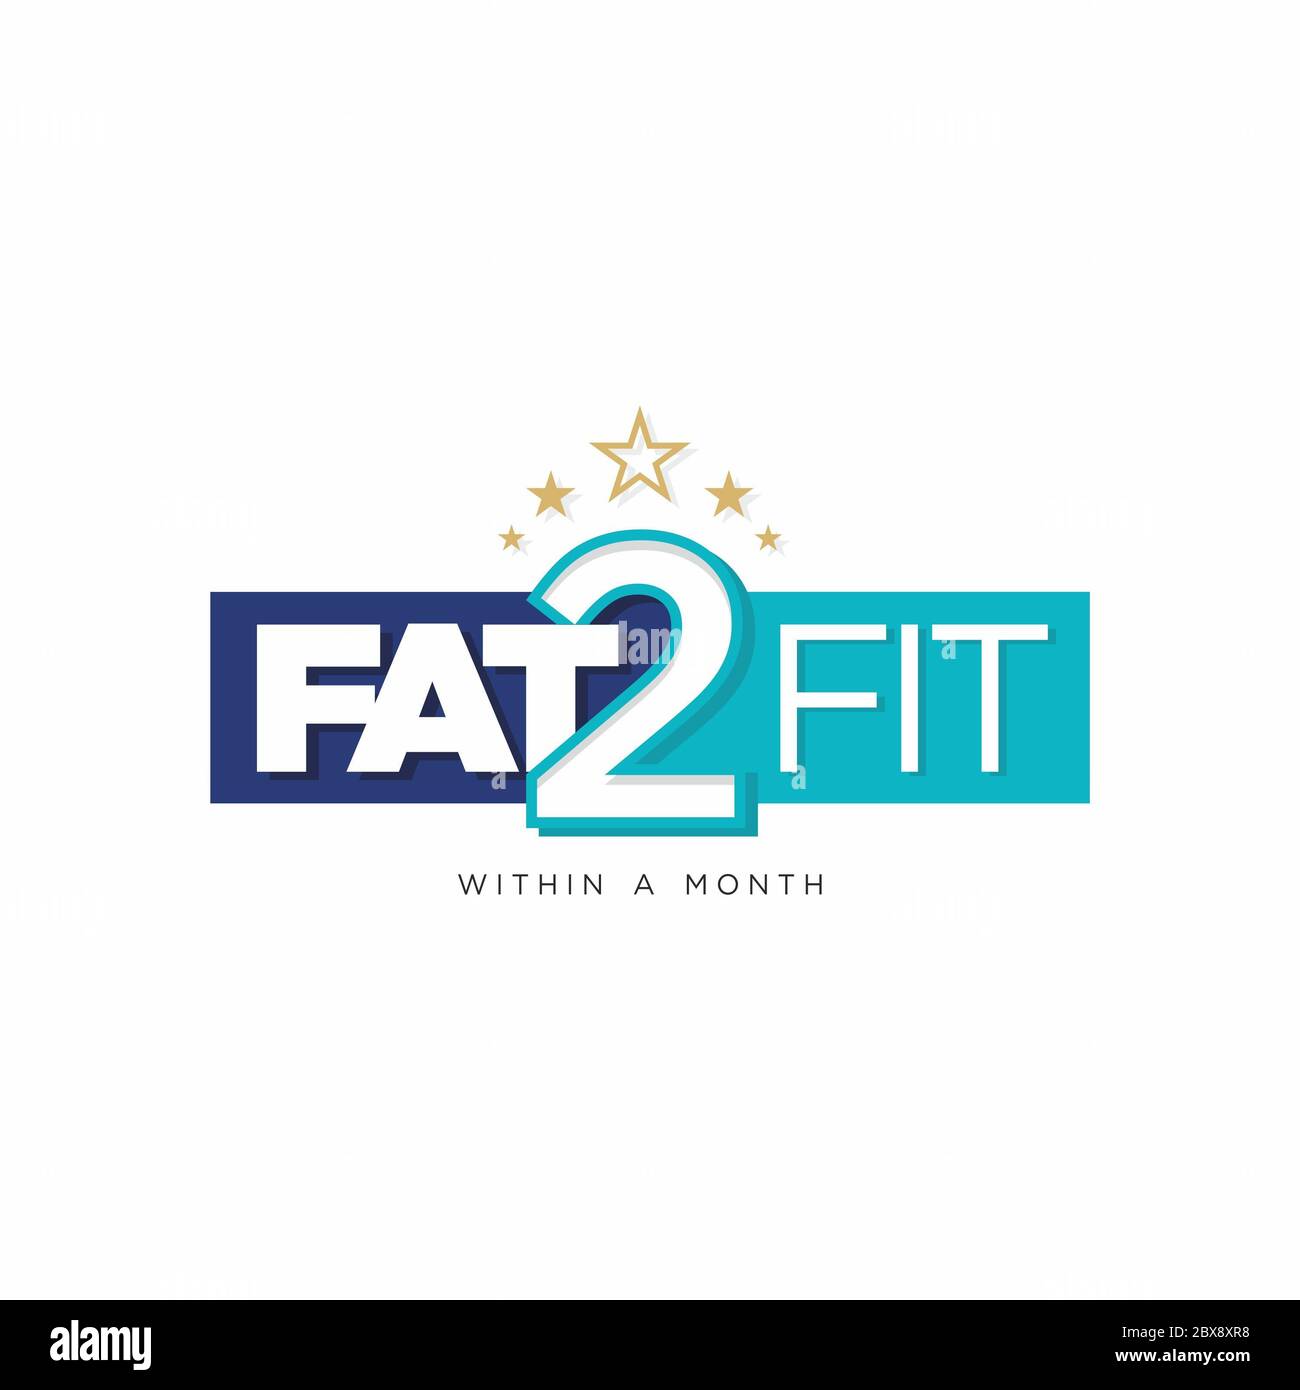 Fat 2 Fit innerhalb EINES Monats - Logo Illustration - Label für Fitness-Studio oder Yoga-Center Stockfoto